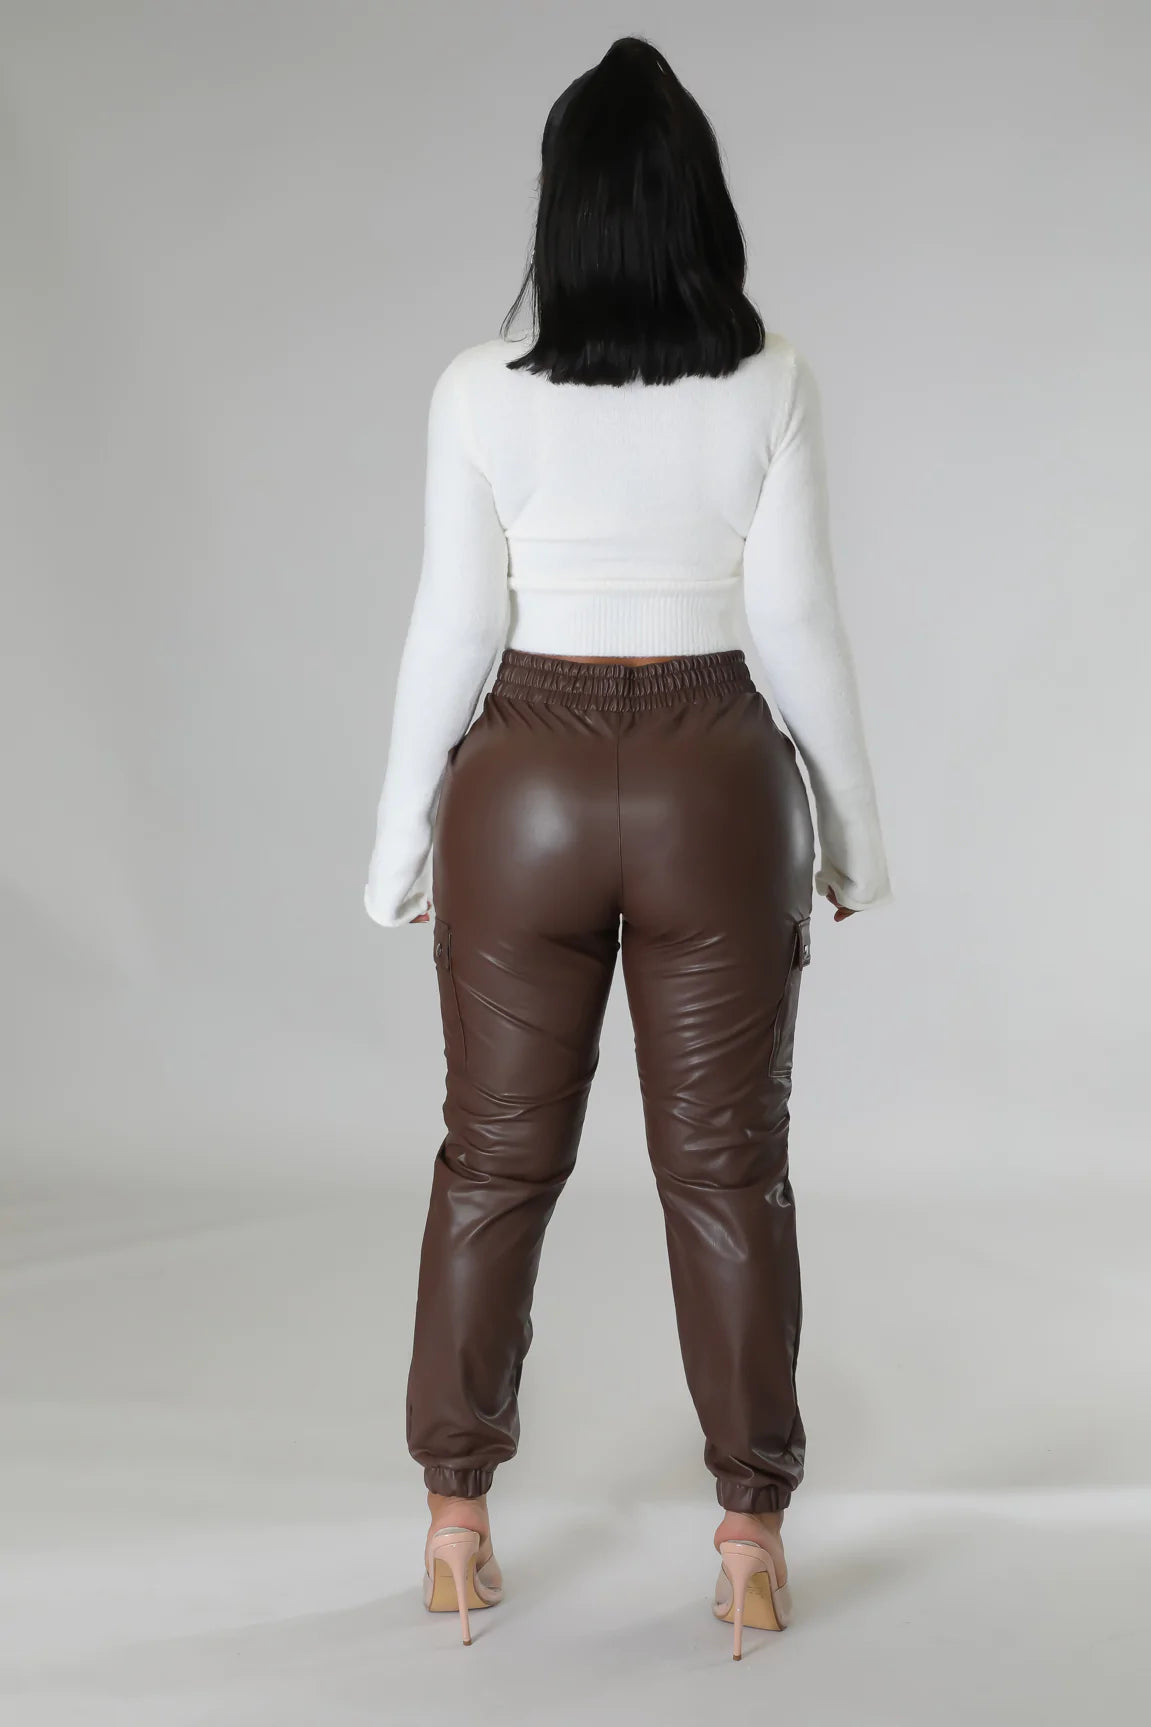 Queen leatherette pants